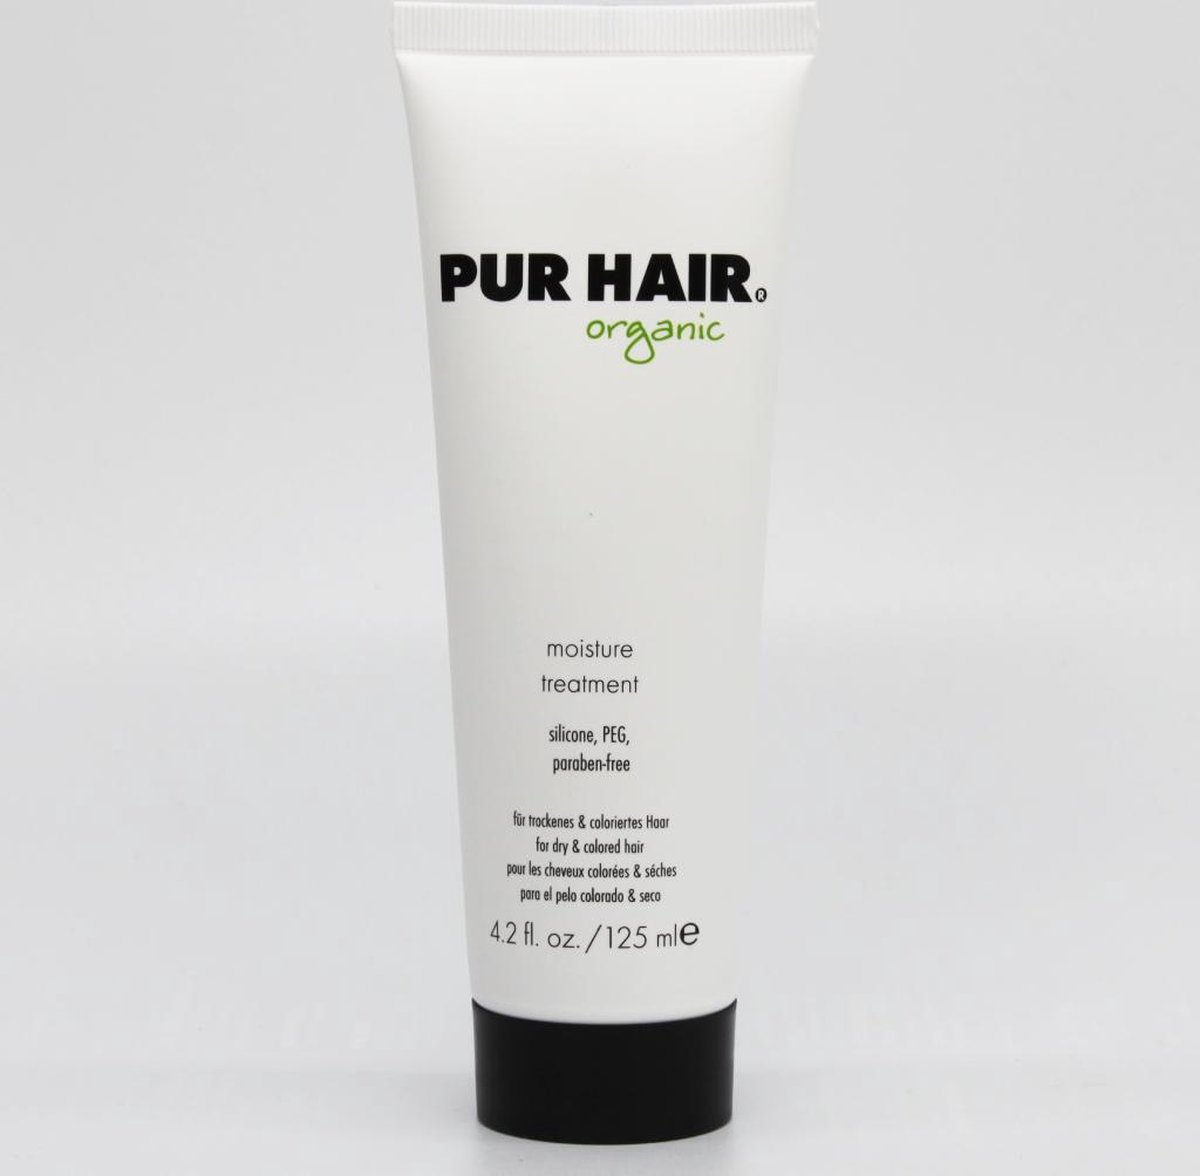 PUR HAIR - Organic - Moisture Treatment Paraben-free